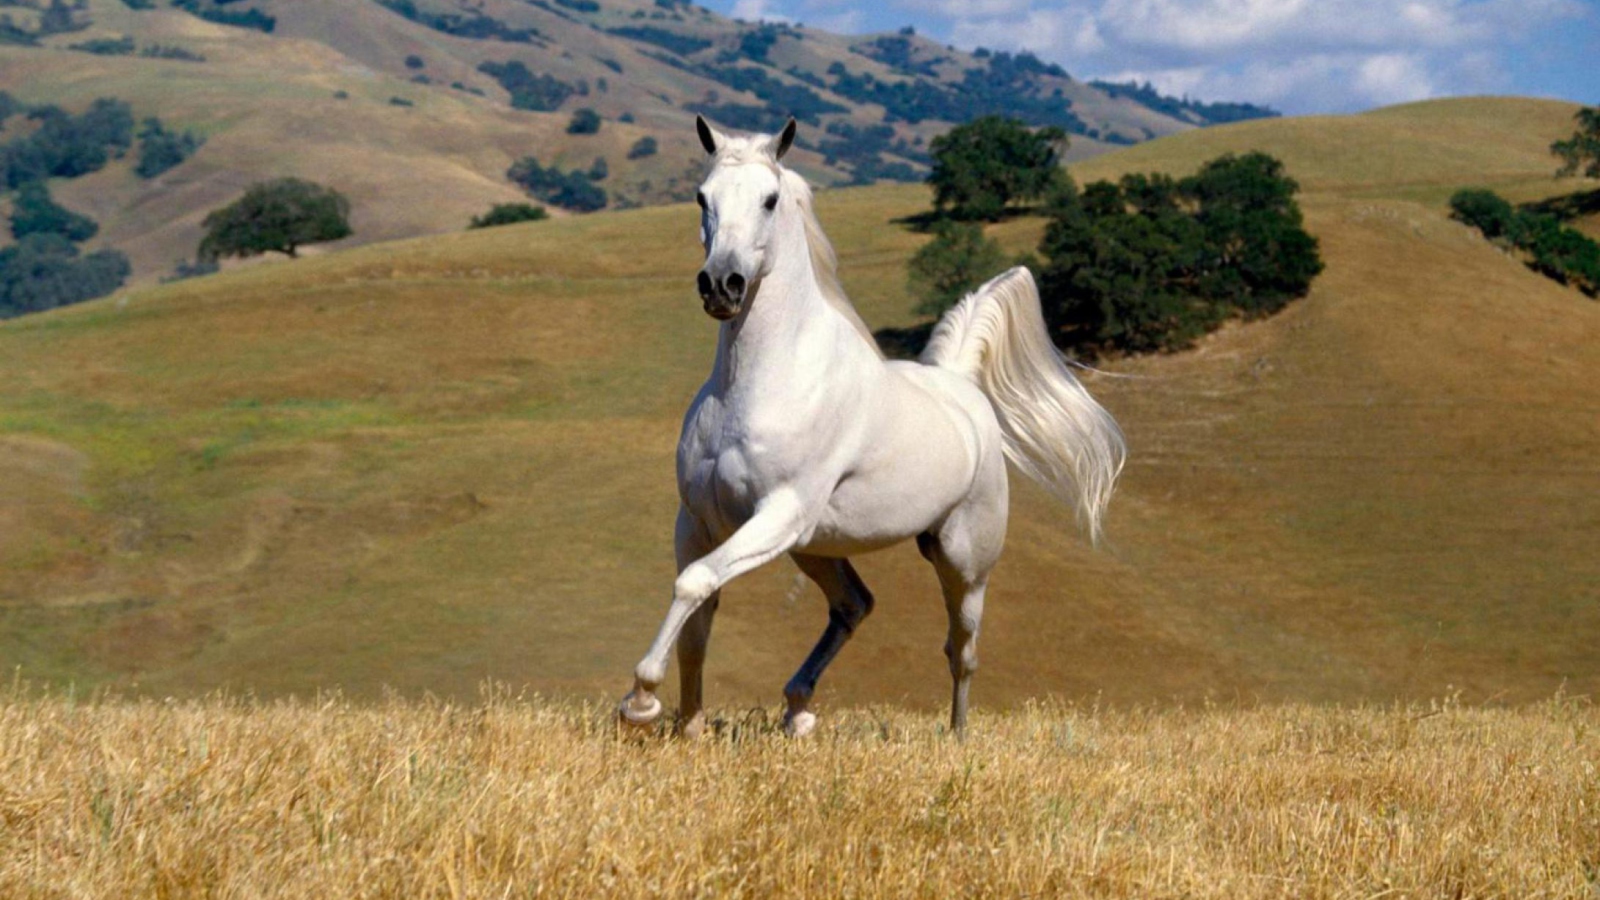 Das Young White Horse Wallpaper 1600x900